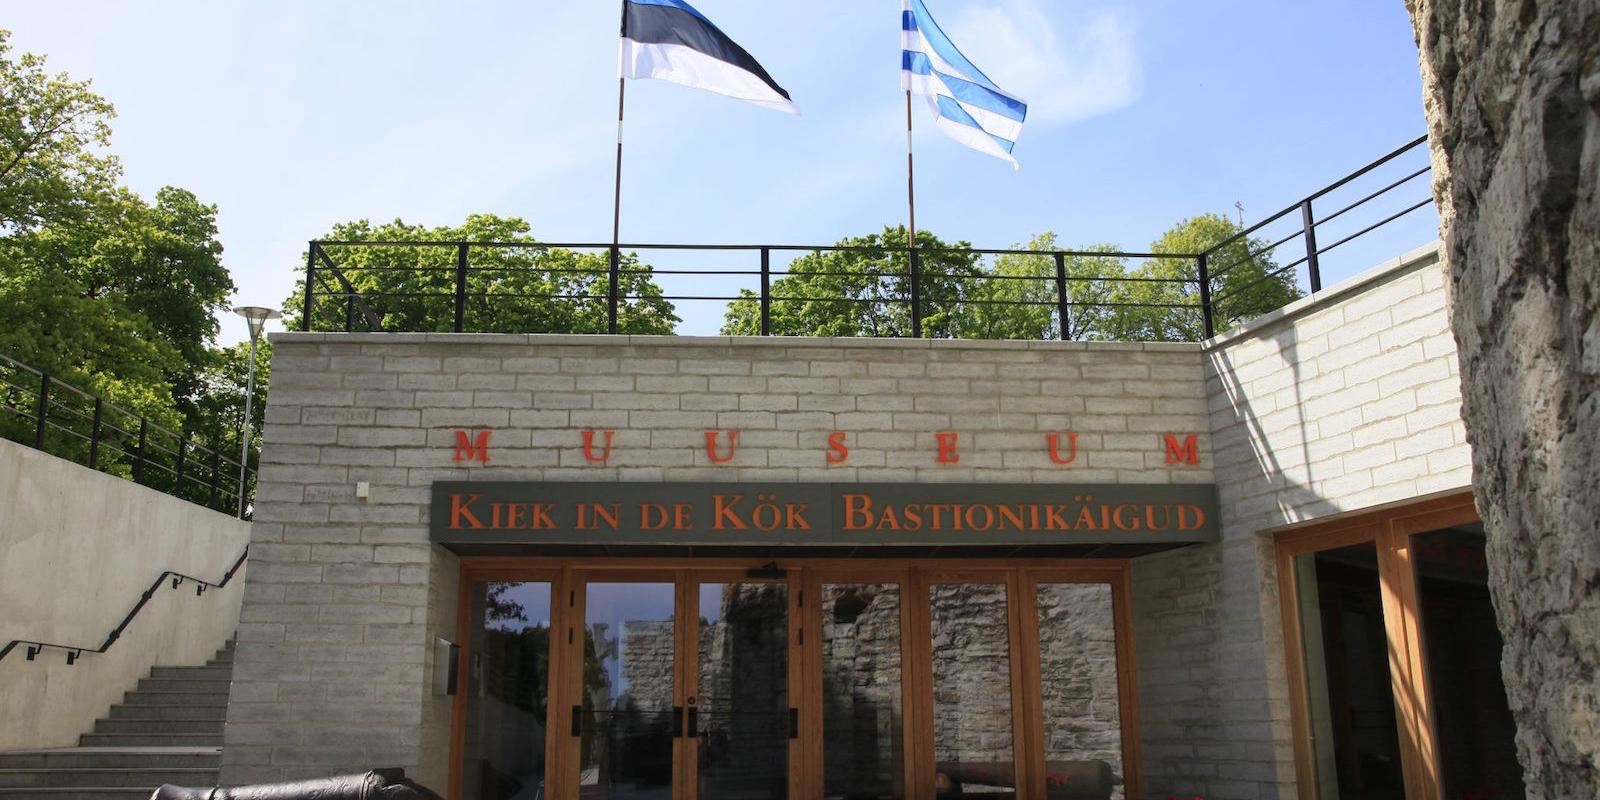 Kiek in de Kök Fortification Museum